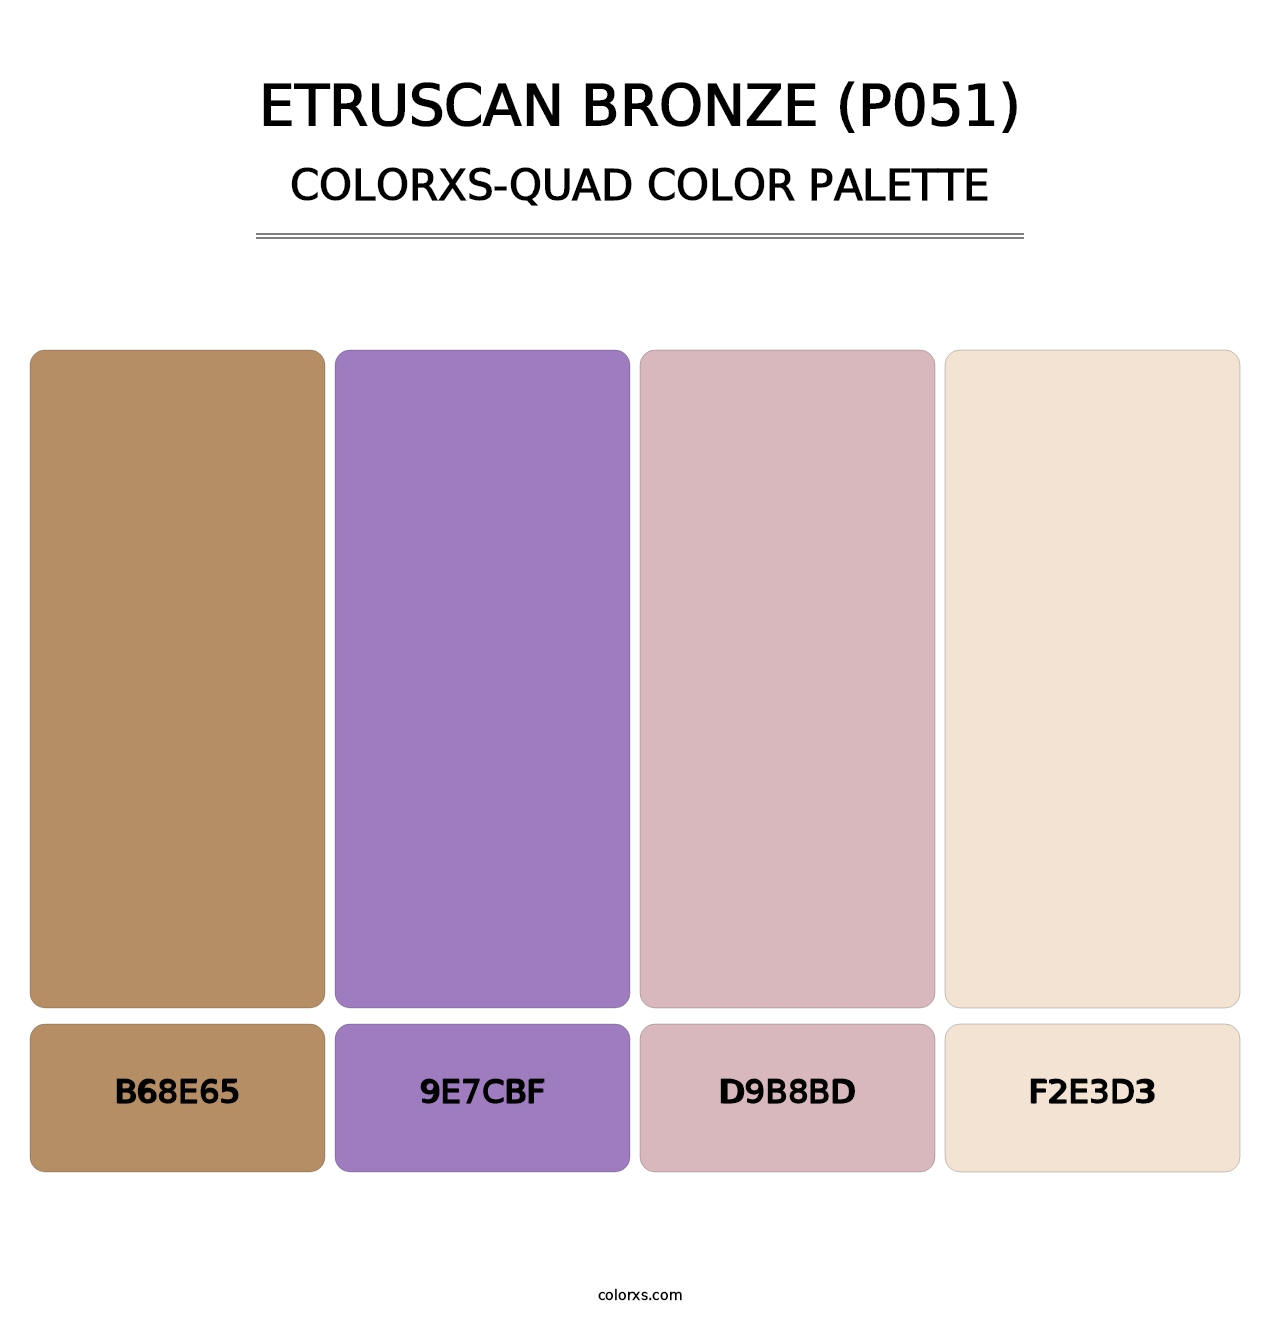 Etruscan Bronze (P051) - Colorxs Quad Palette